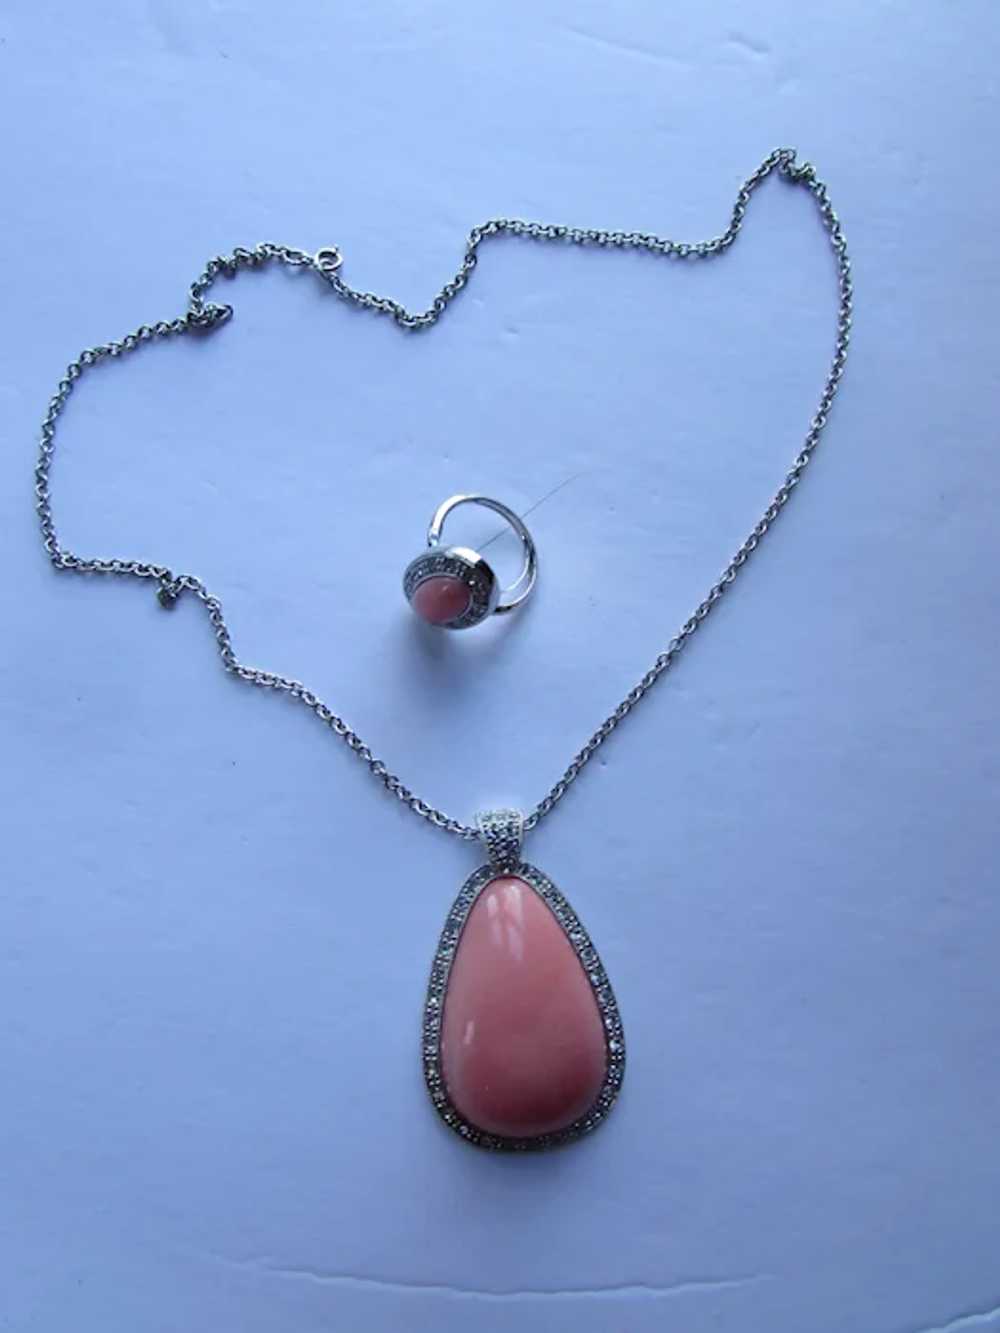 SALE Avon Pale Fire Pendant Necklace & Ring Origi… - image 3